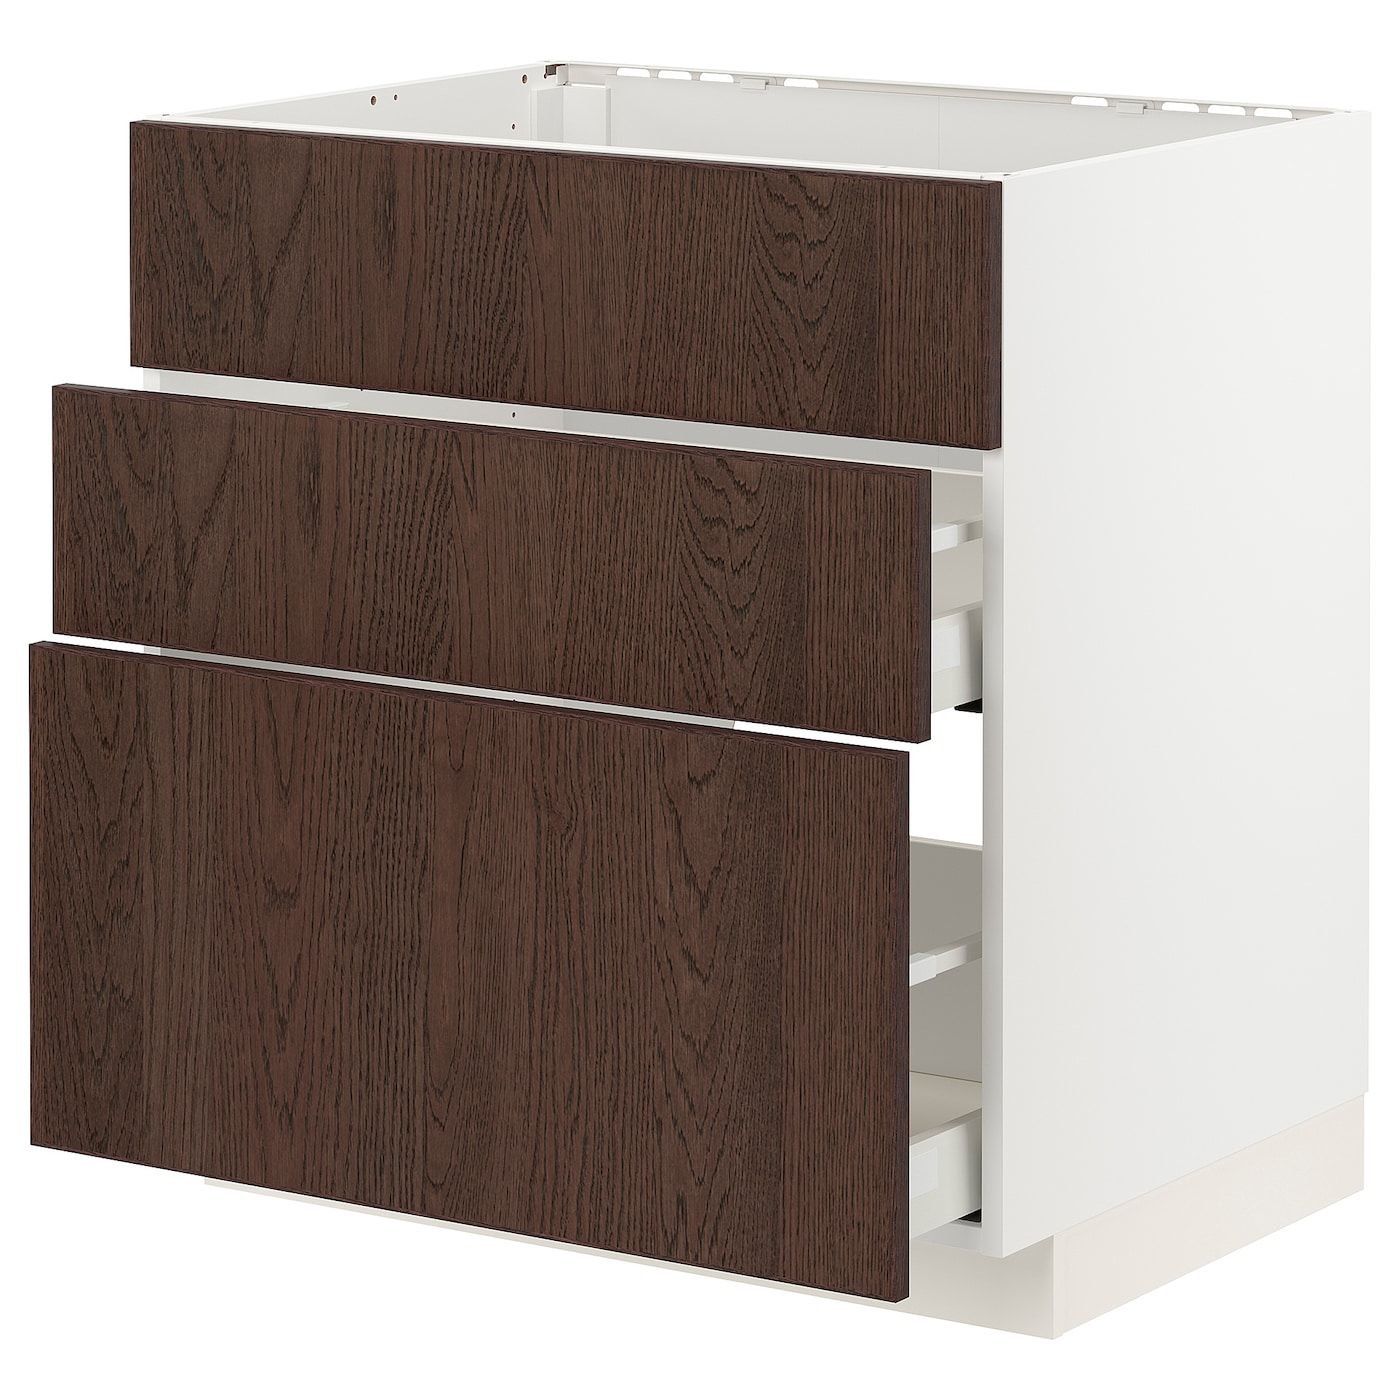 Напольный кухонный шкаф  - IKEA METOD MAXIMERA, 88x62x80см, белый/темно-коричневый, МЕТОД МАКСИМЕРА ИКЕА